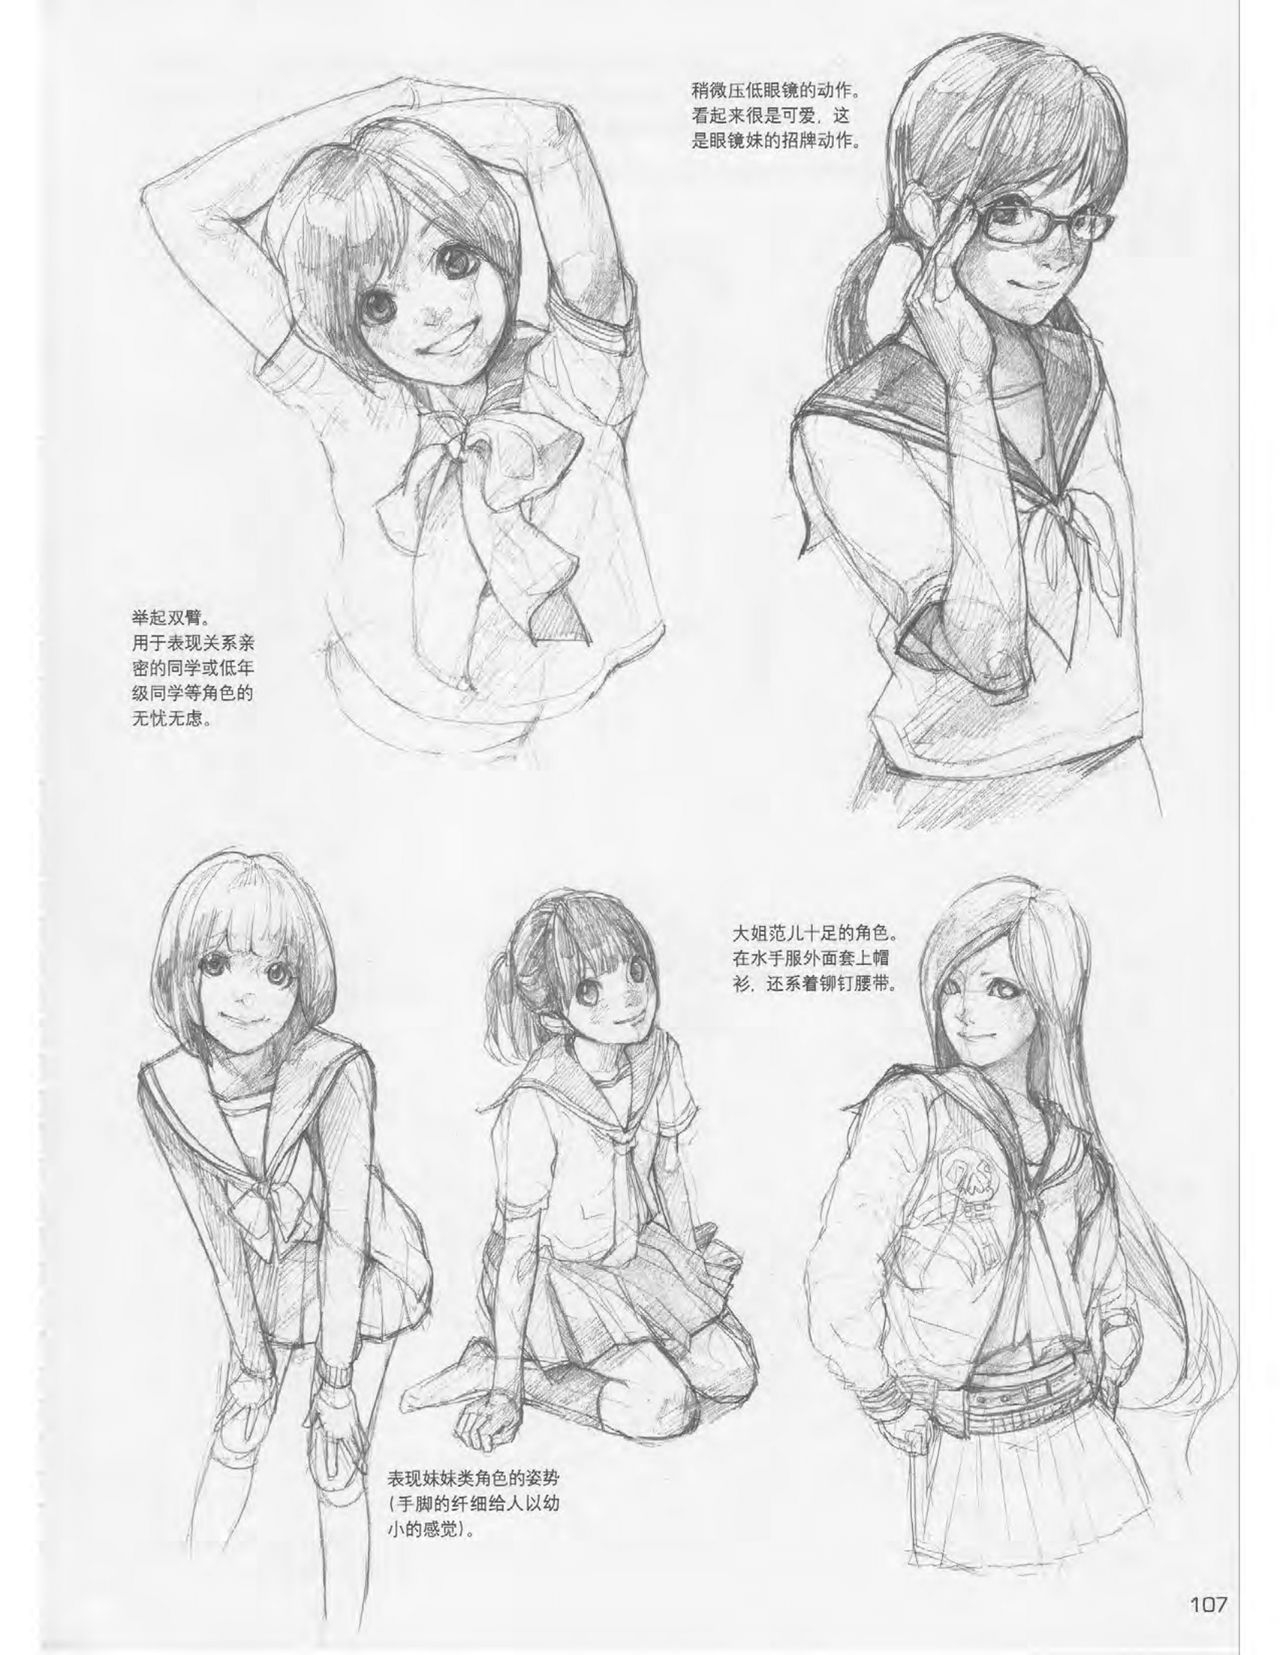 Japanese Manga Master Lecture 3: Lin Akira and Kakumaru Maru Talk About Glamorous Character Modeling 107